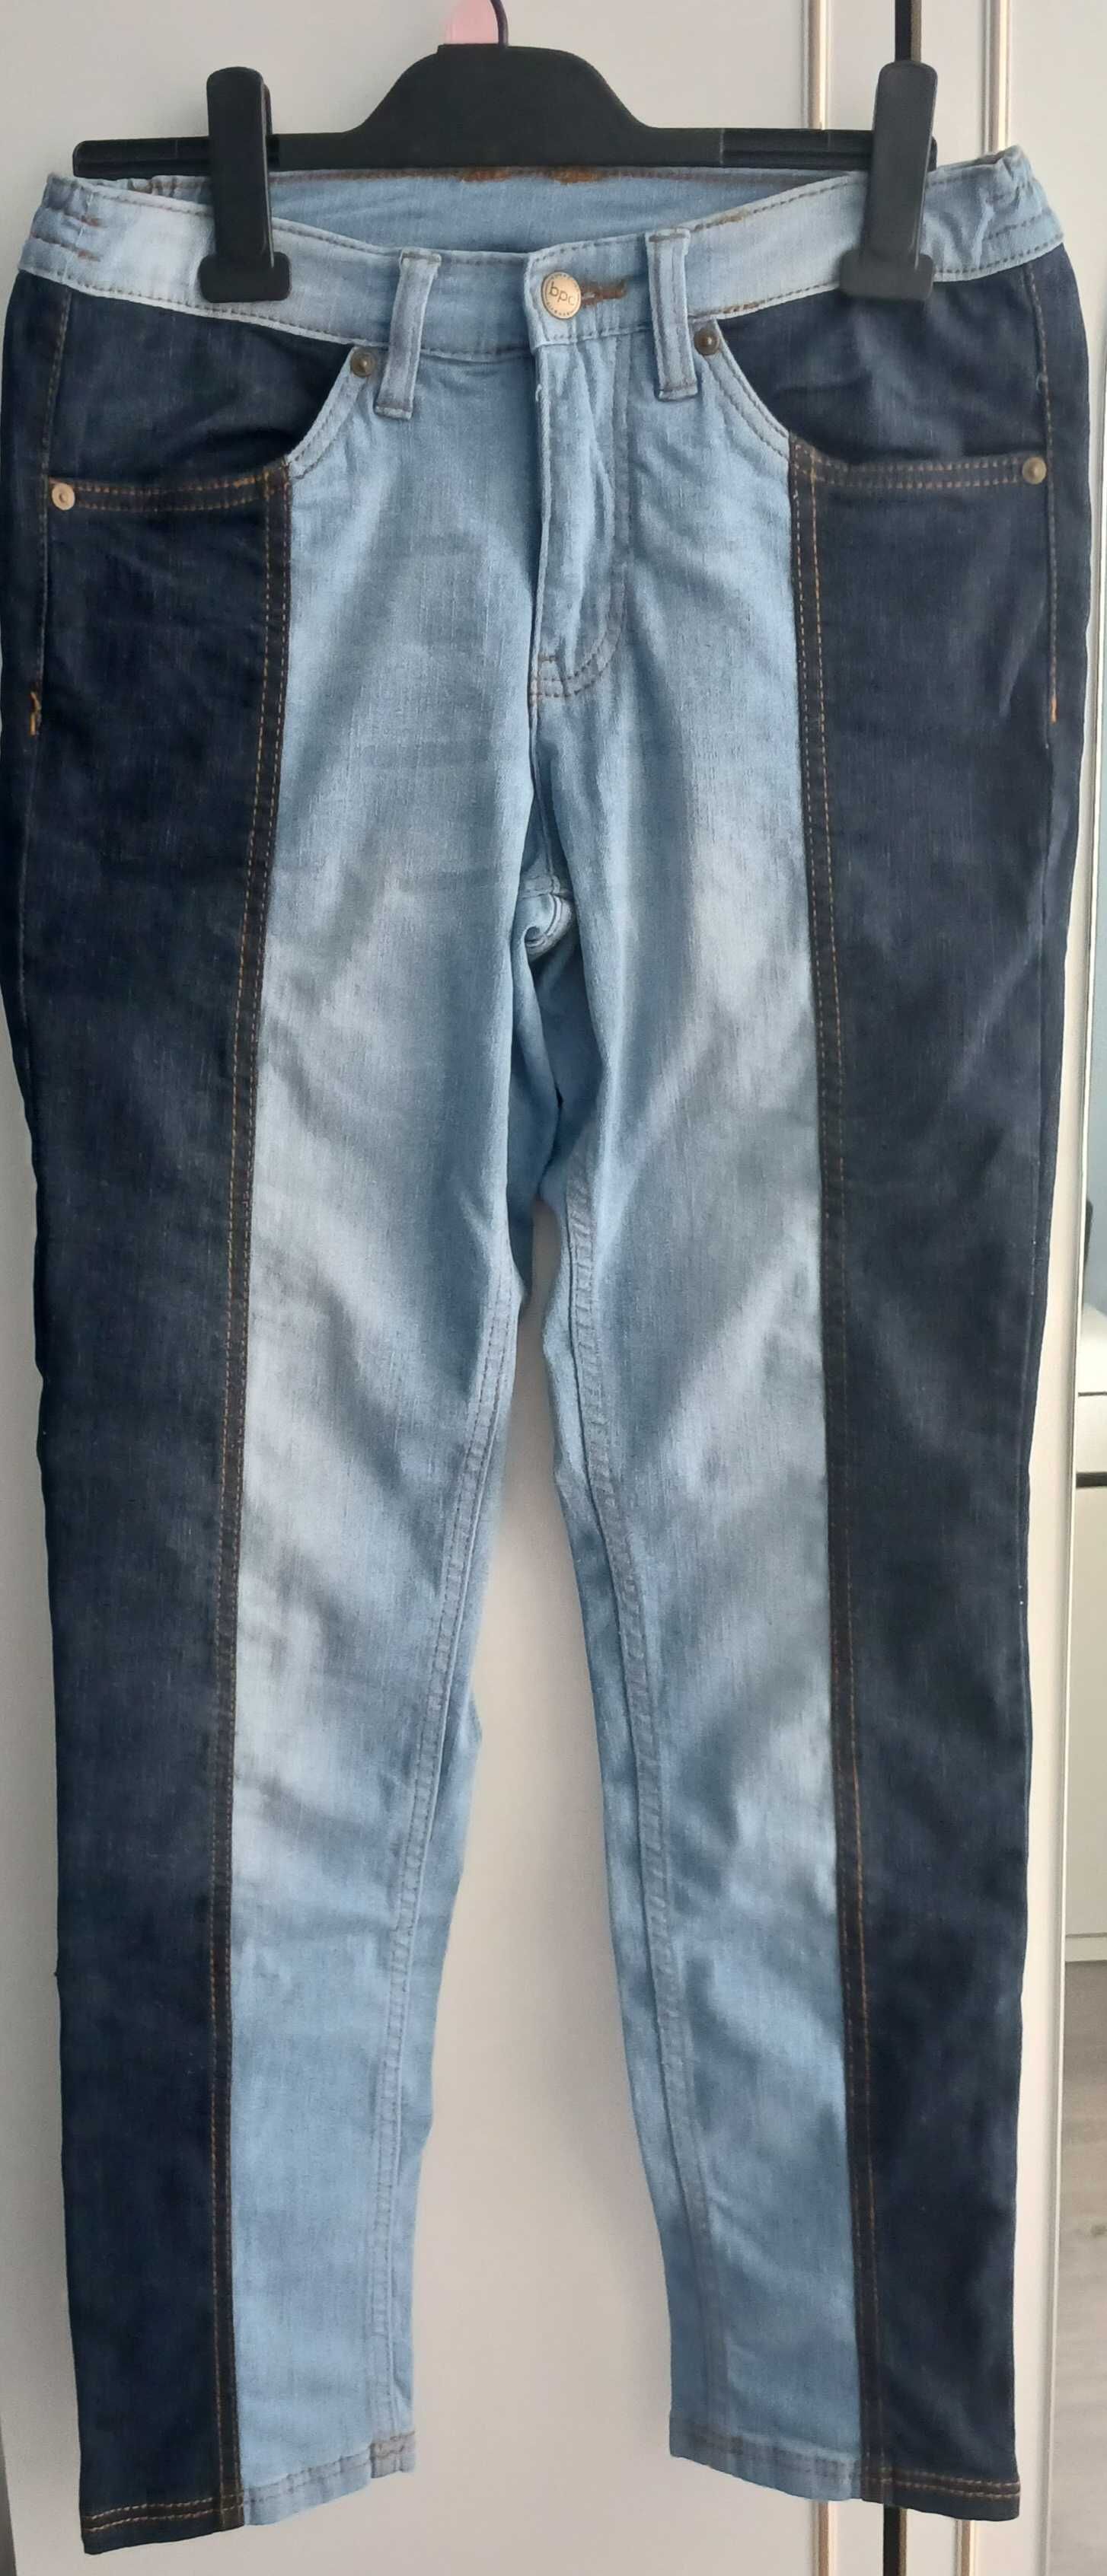 Nowe damskie spodnie jeansowe r.38,Bonprix